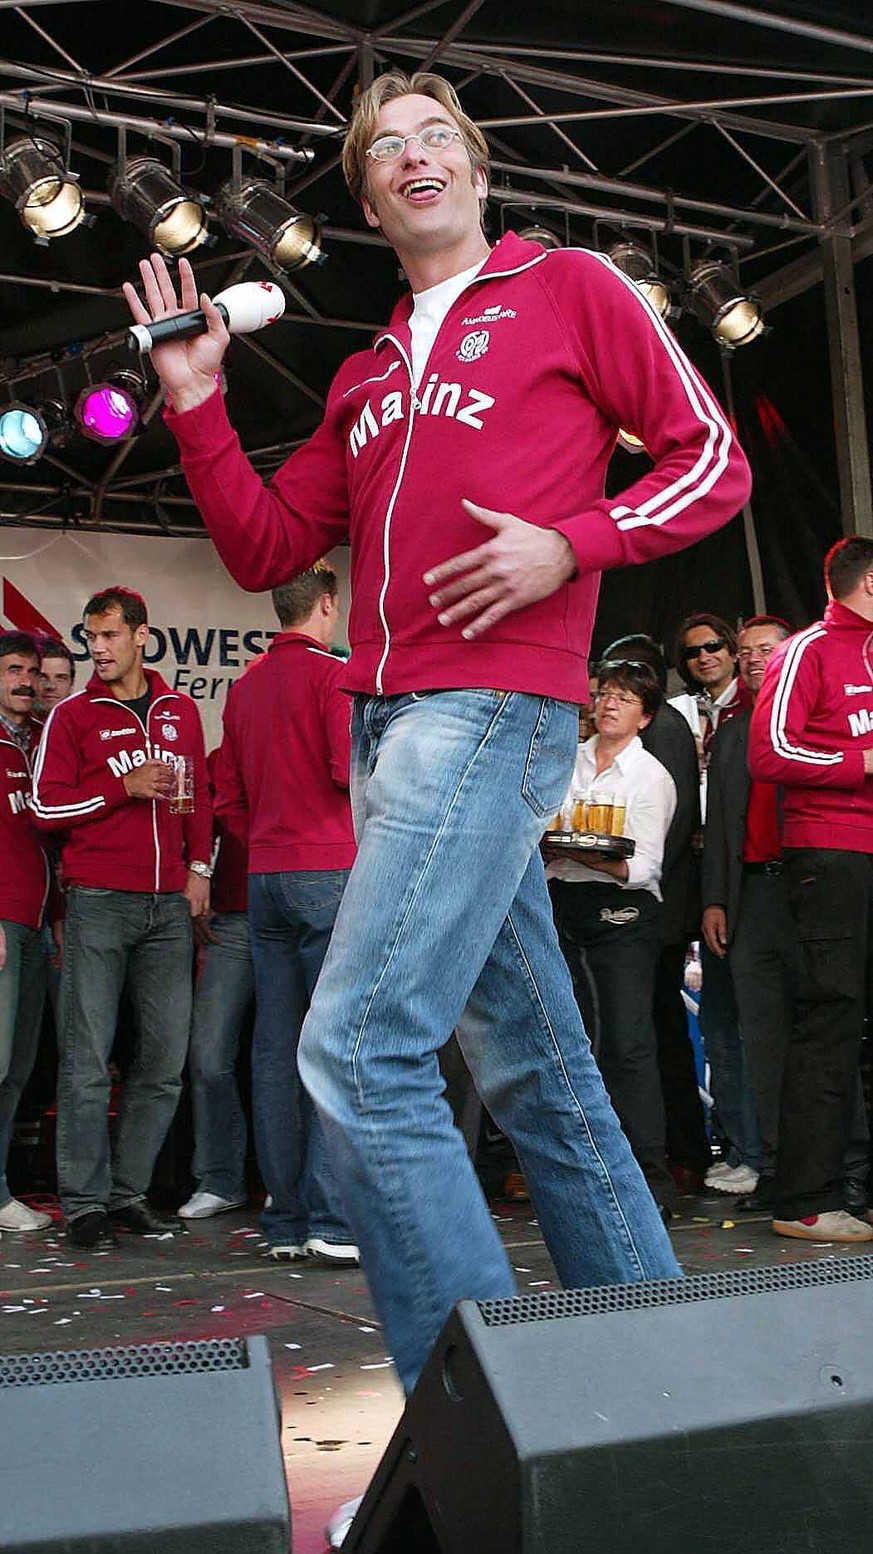 Hier freut sich Klopp nicht über irgendetwas, sondern über den allerersten Bundesligaaufstieg von Mainz 05. Klopp war der Vater des Erfolgs. 